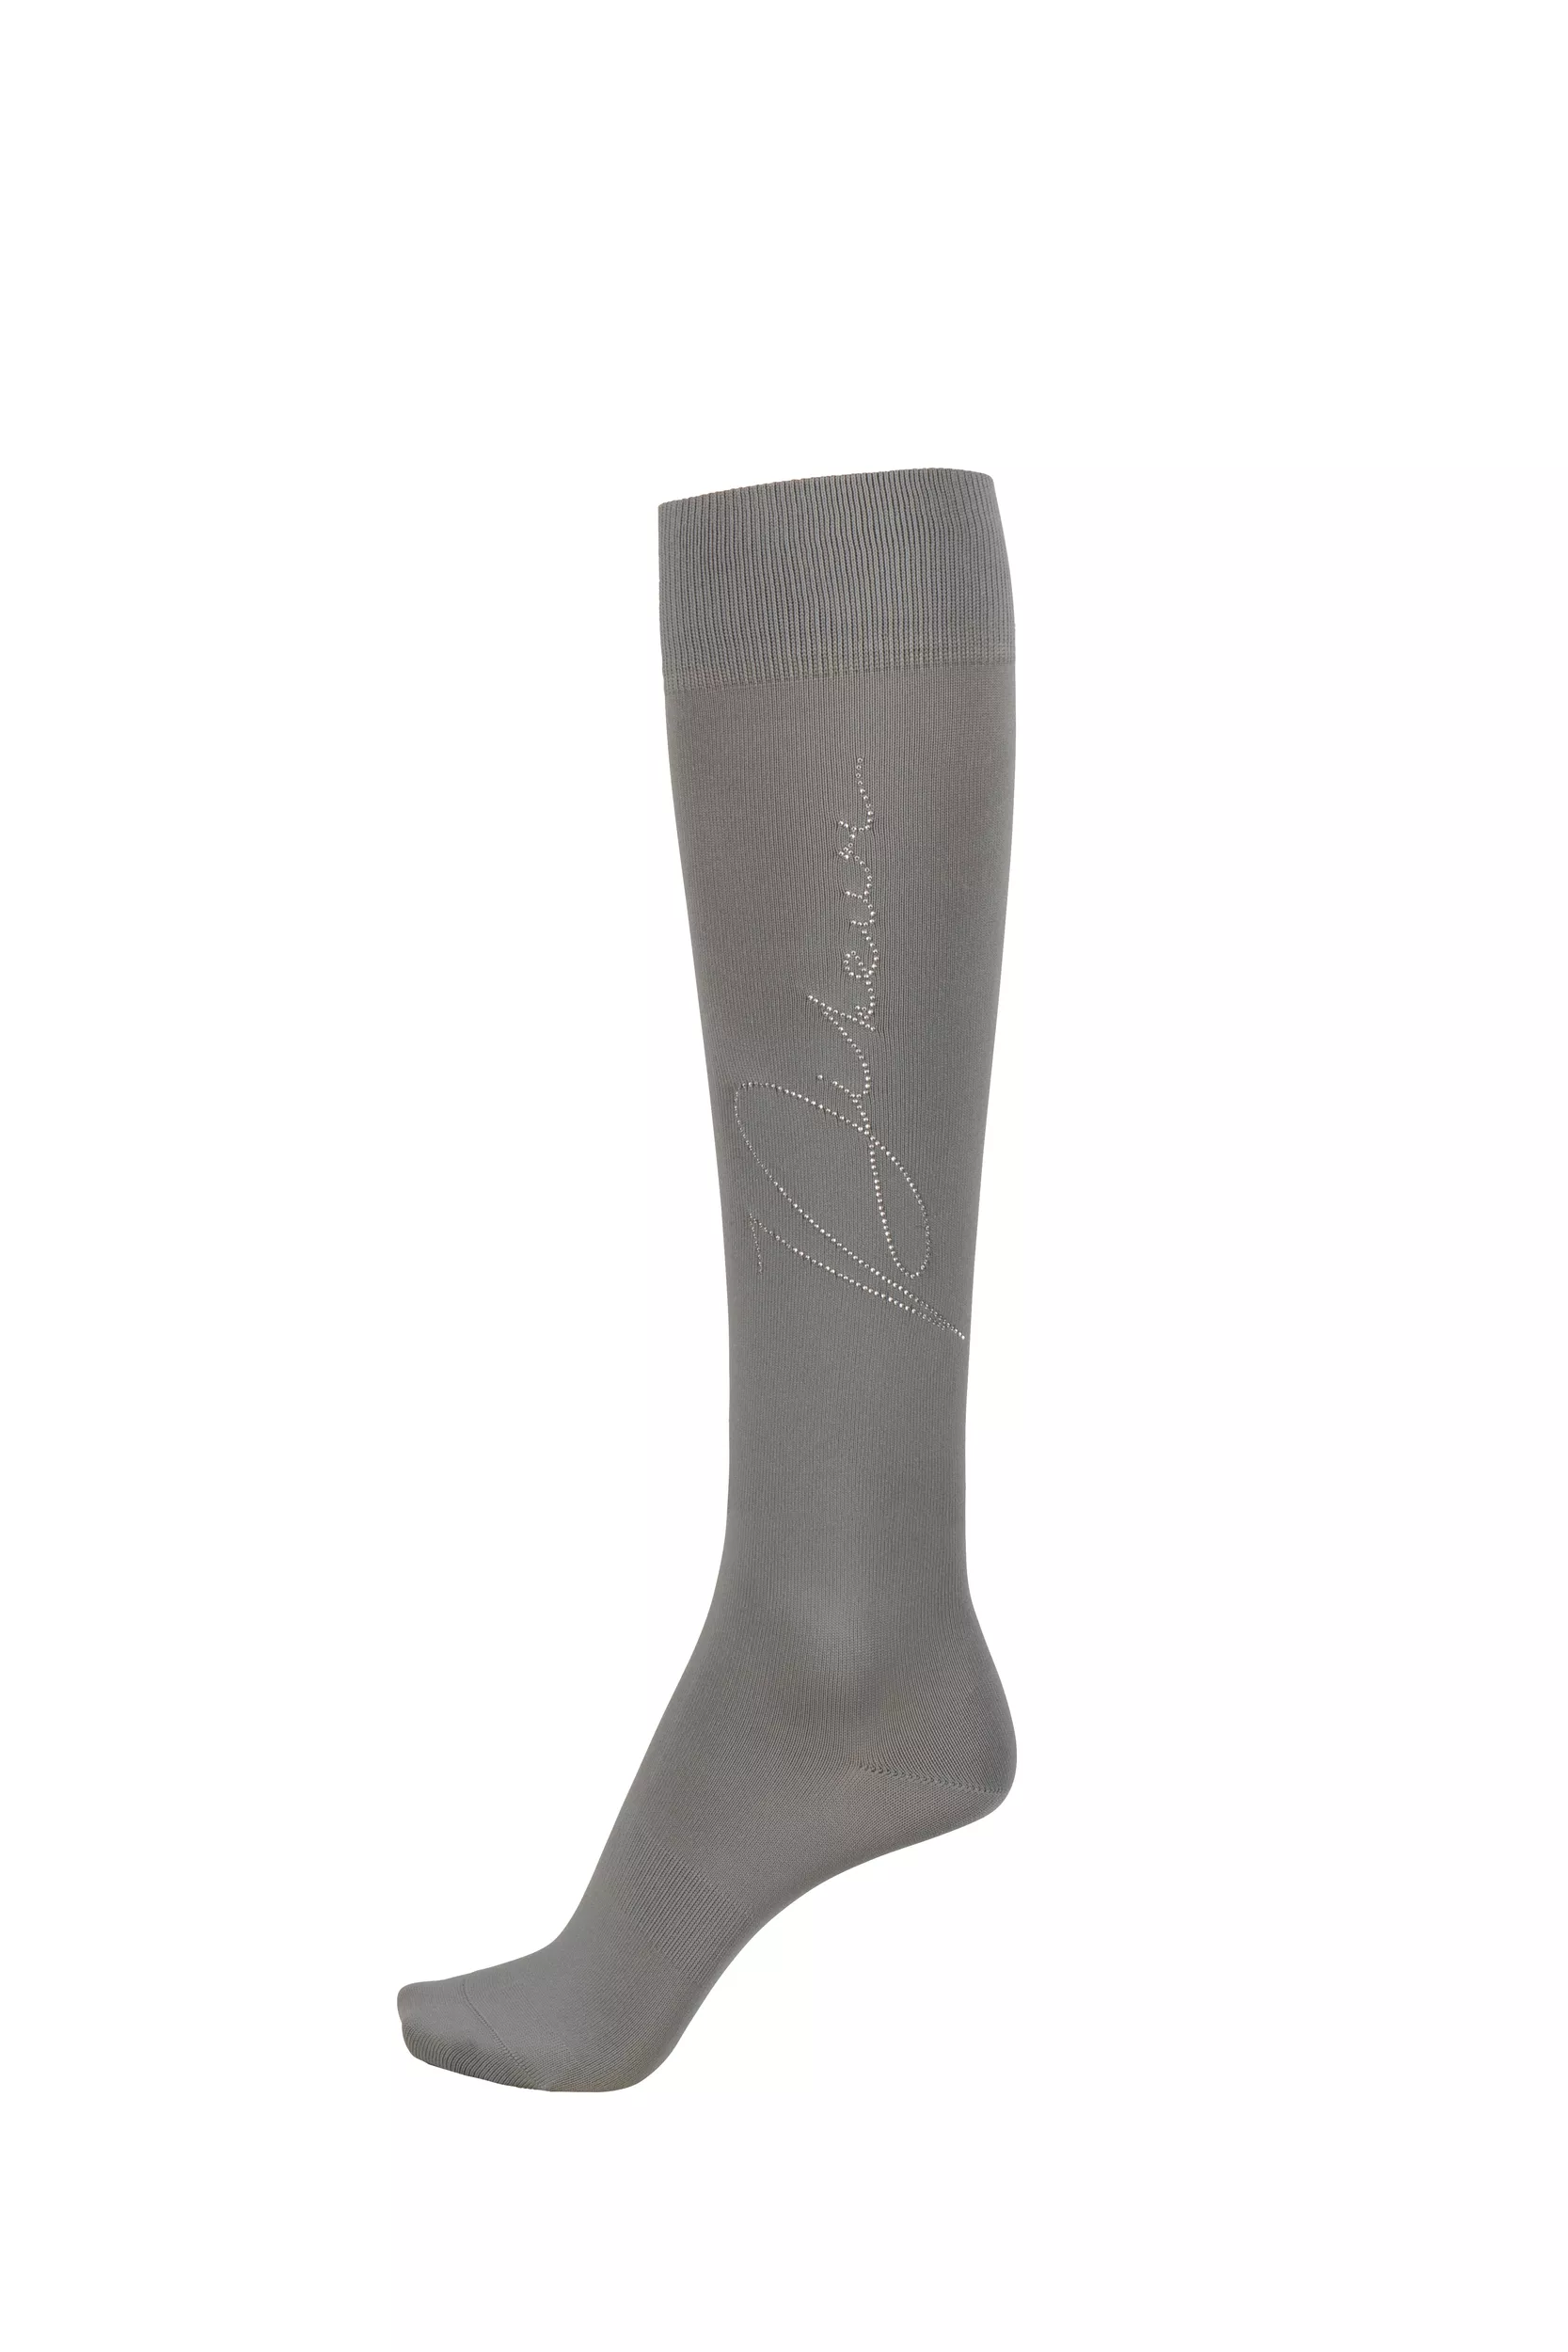 Calze da equitazione KNIE-STRUMPF con borchie di strass, grigio chiaro / grigio chiaro